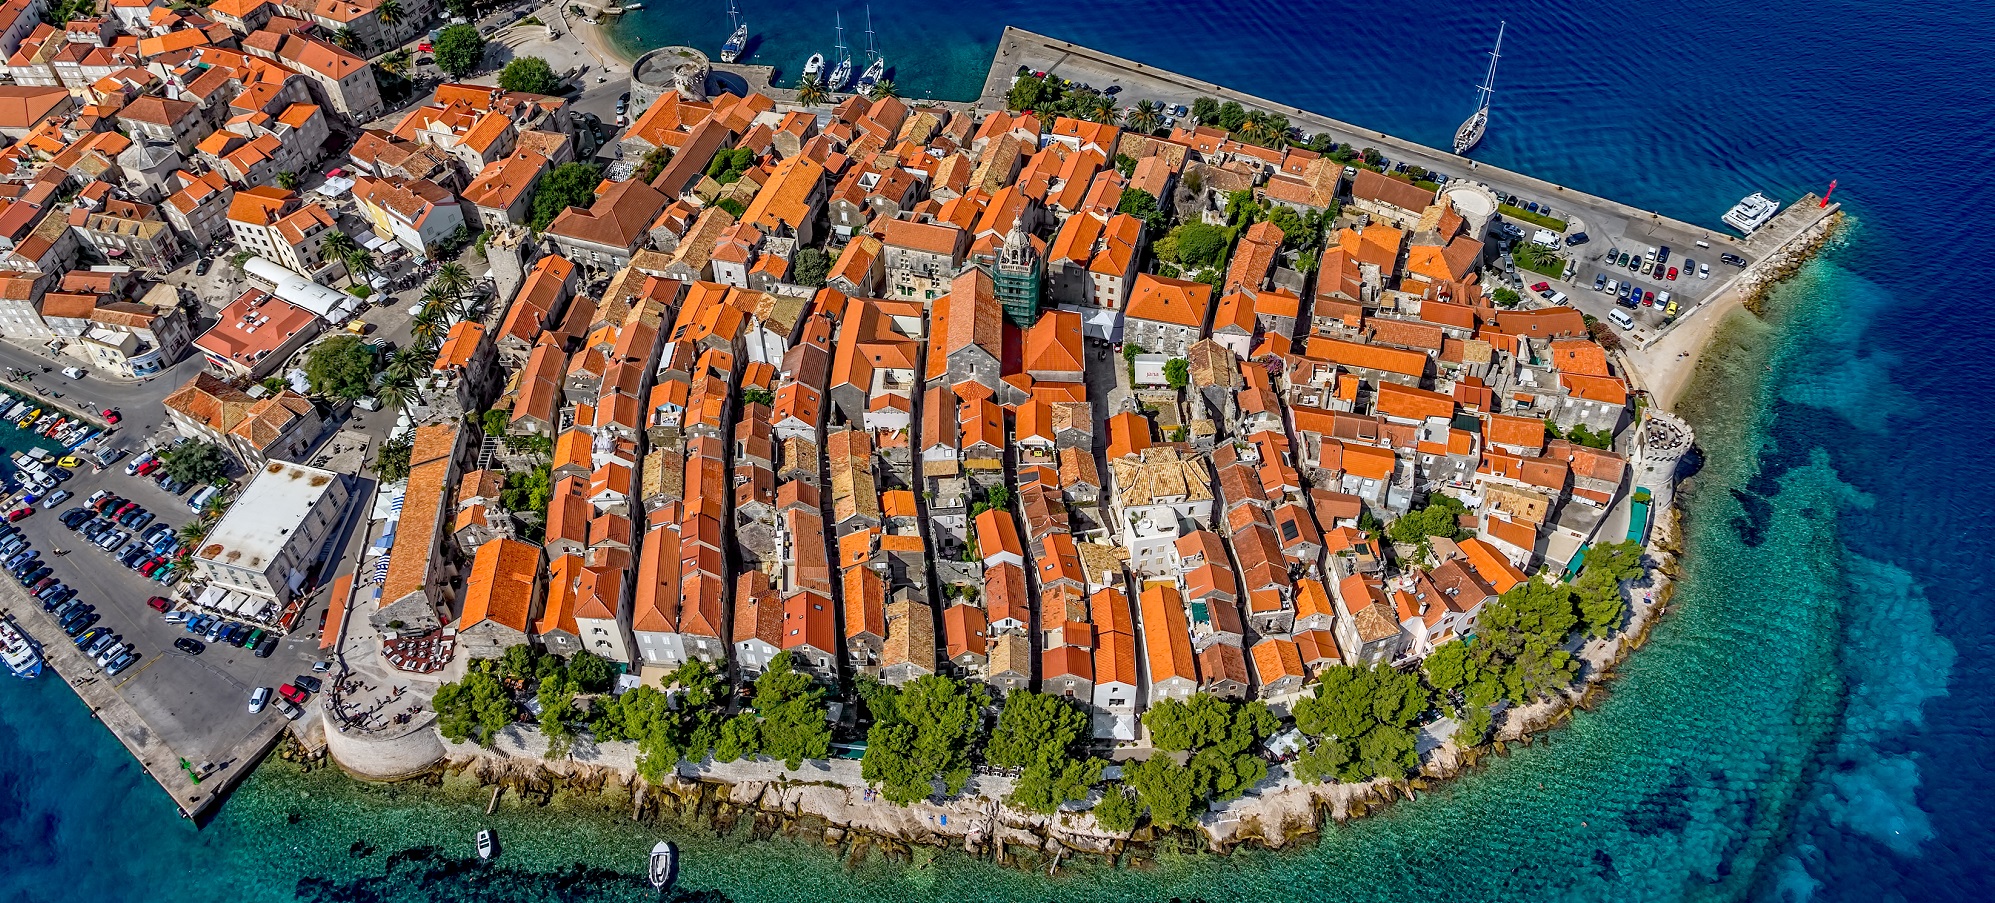 Rotta di navigazione di Dubrovnik: Dalla perla adriatica alle gemme nascoste